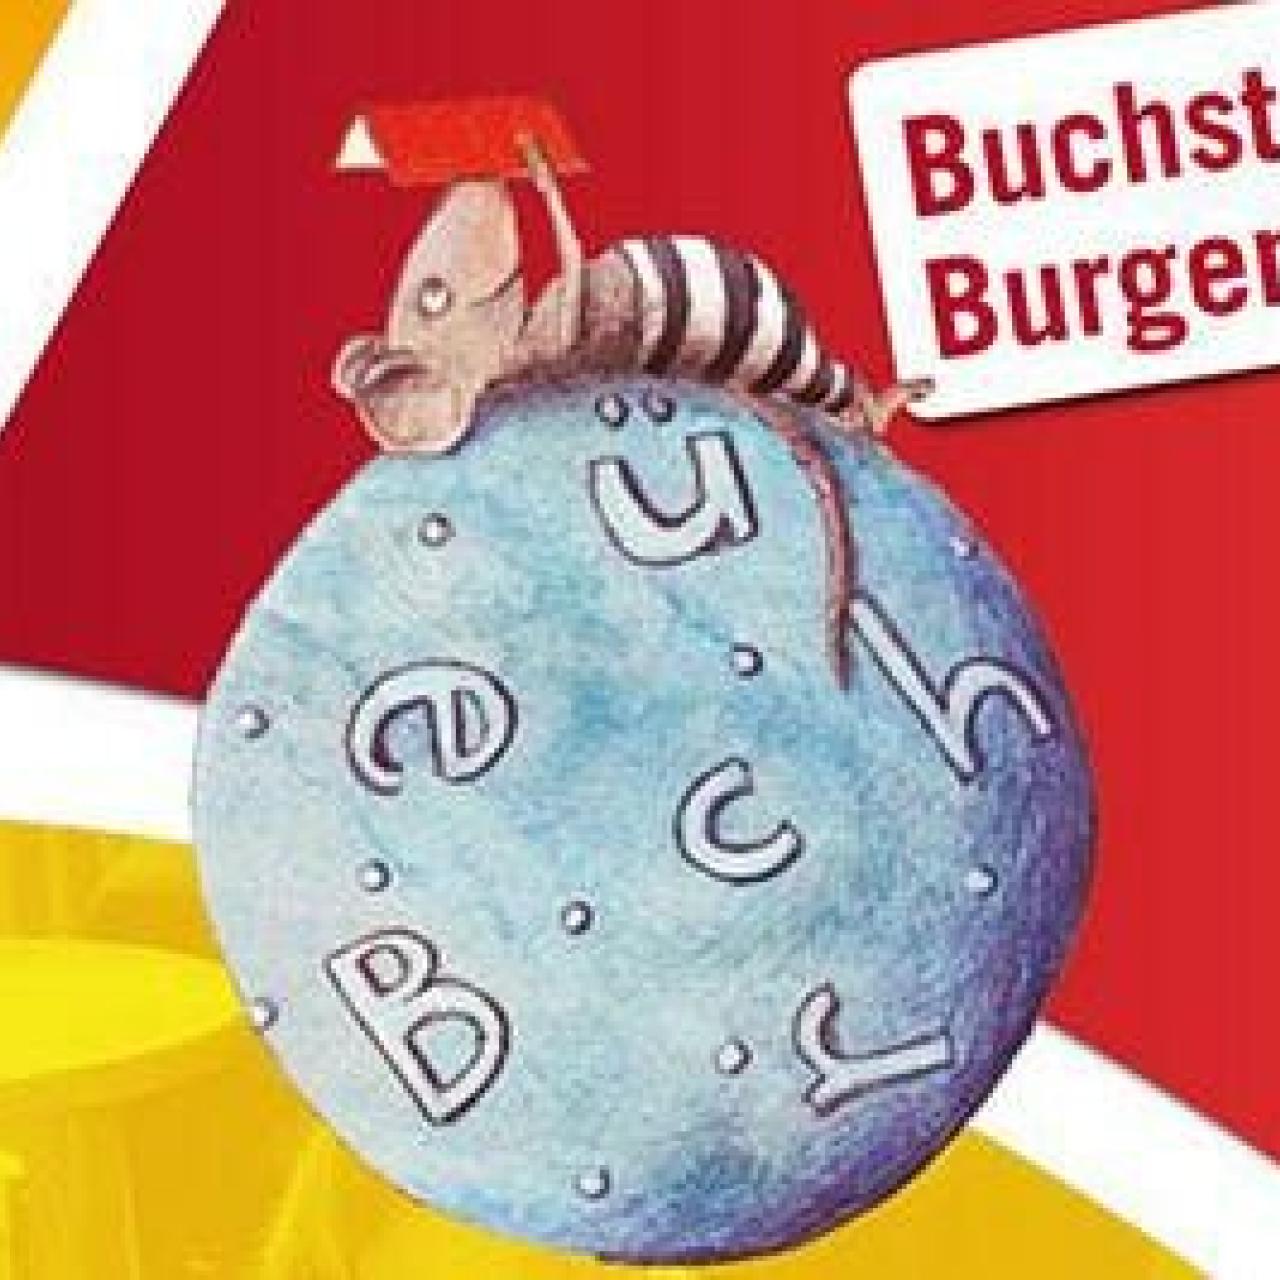 Buchstart Burgenland Logo